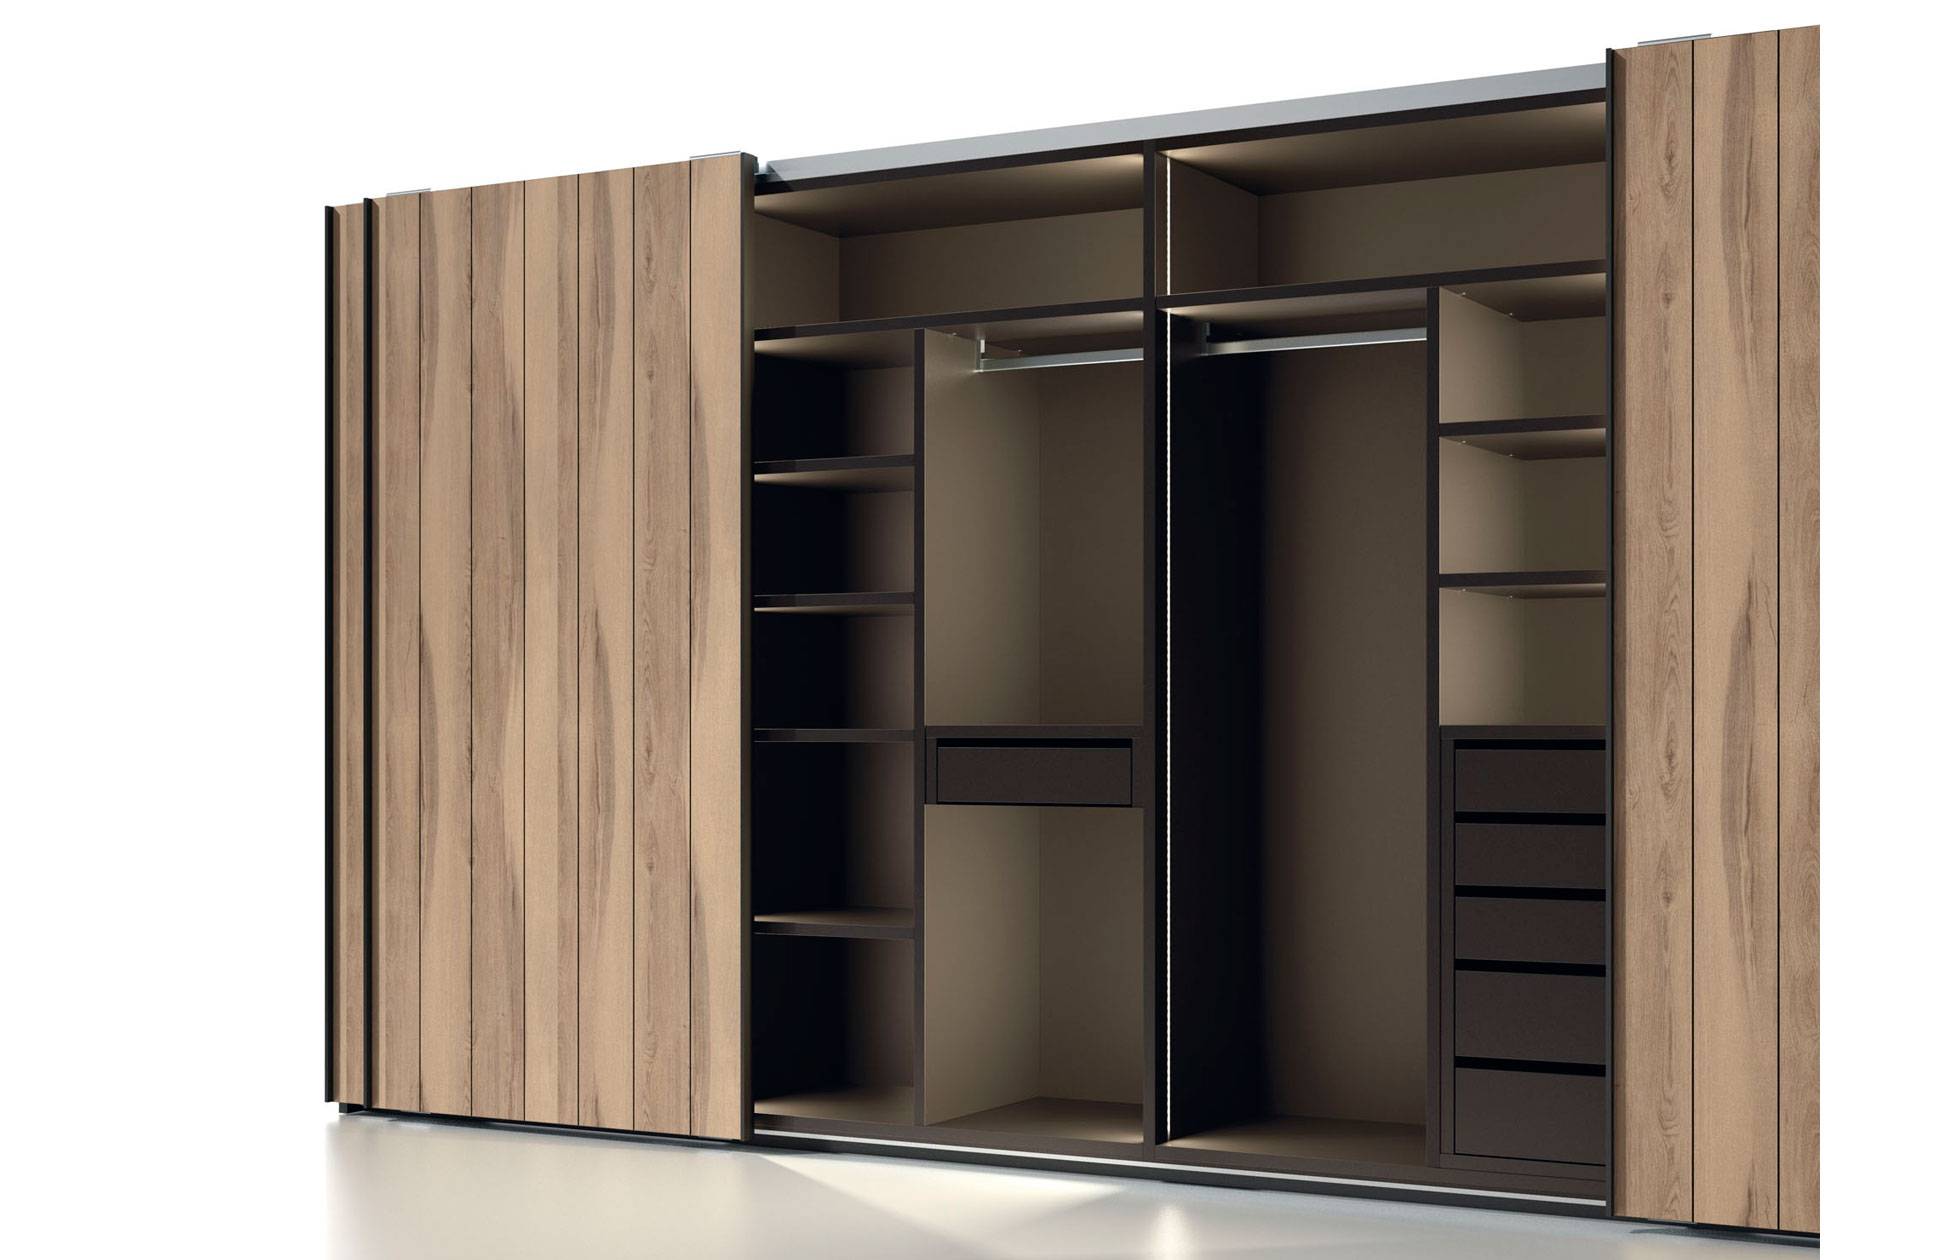 Armario de 70 cm de ancho: Organiza tus pertenencias con estilo en nuestro espacioso armario de 70 cm de ancho.